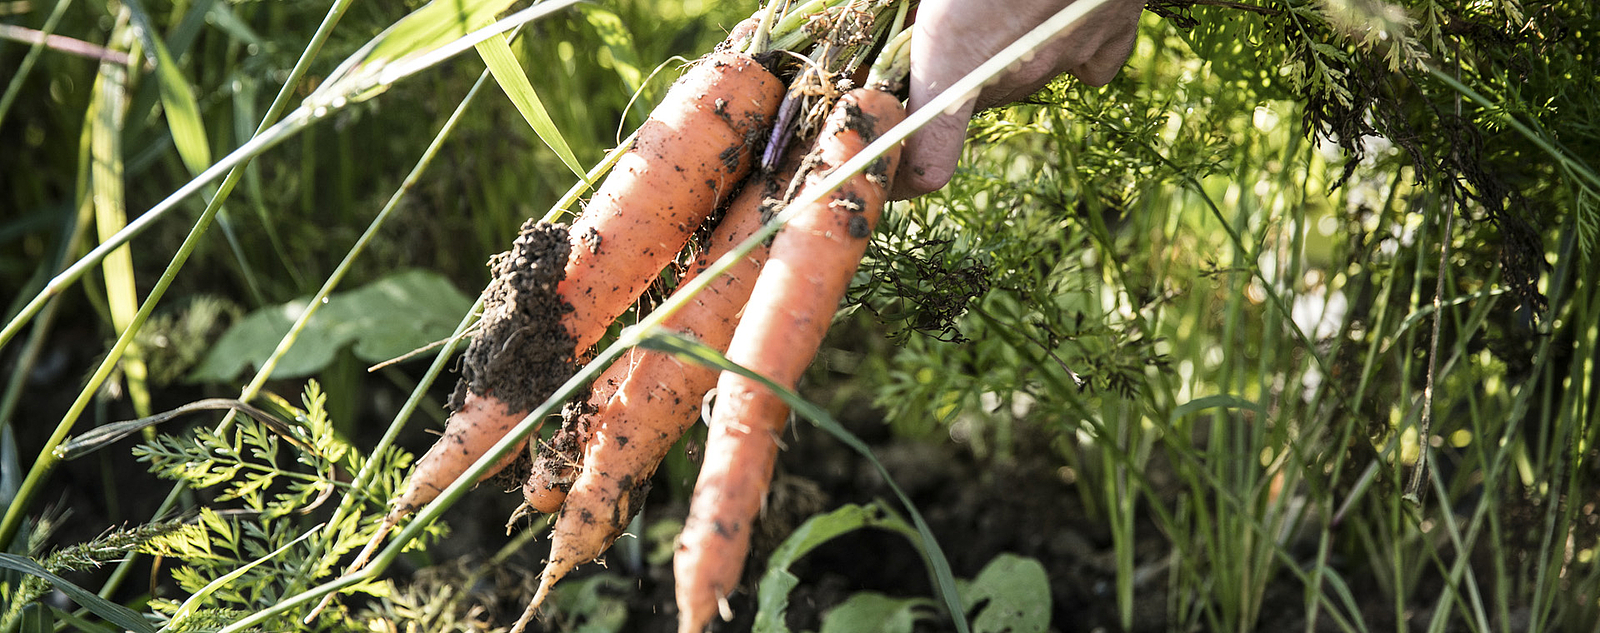 Karotten frisch aus der Erde